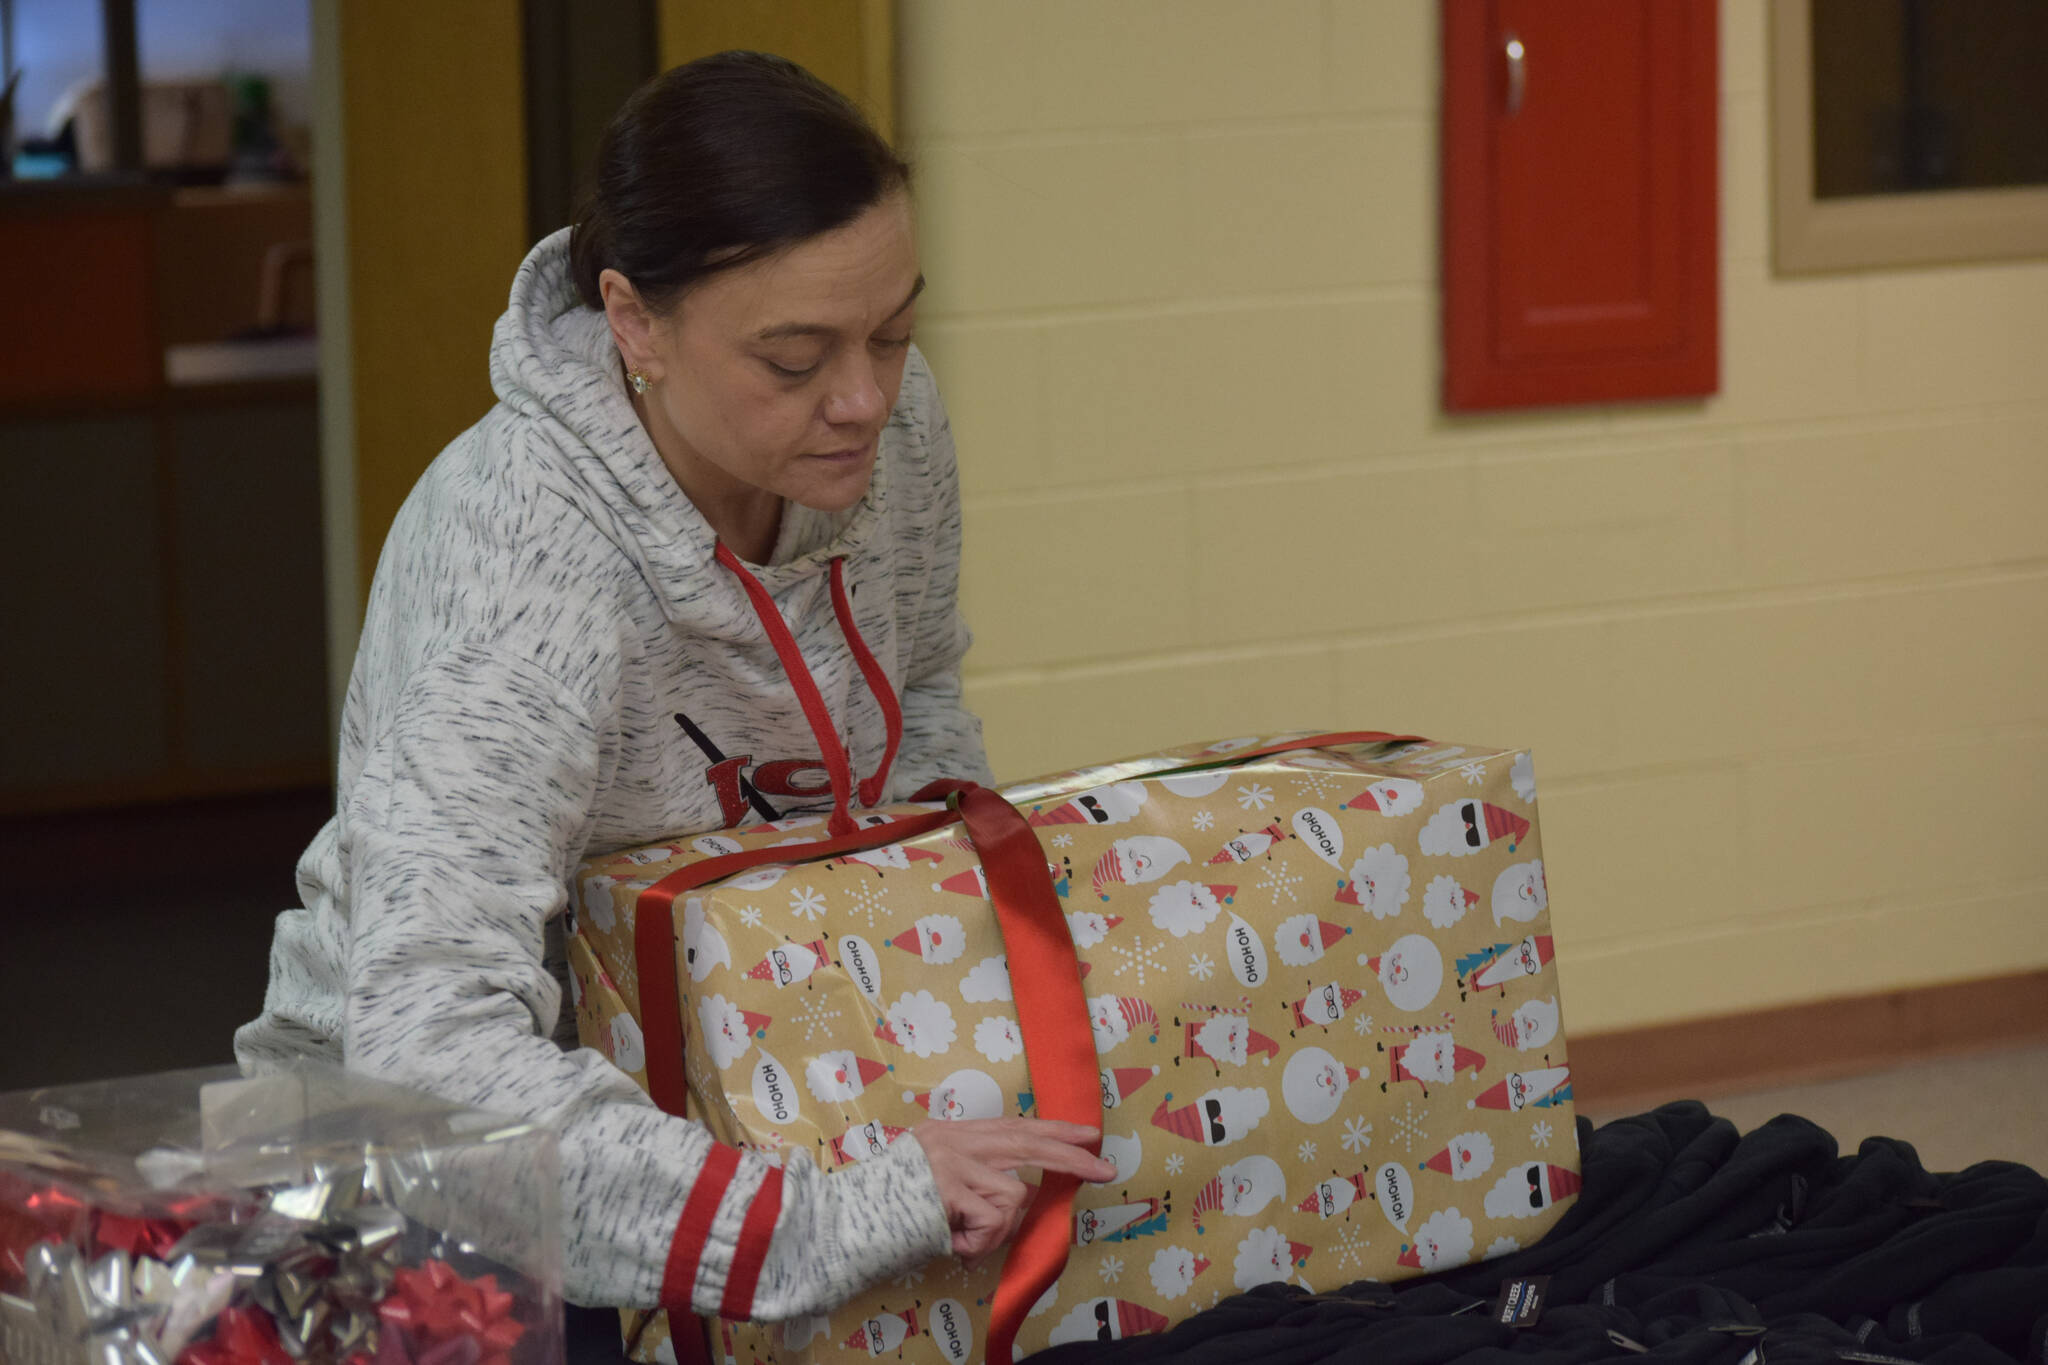 Sasha Fallon wraps gifts at the Nikiski Community Recreation Center on Saturday, Dec. 11, 2021, in Nikiski, Alaska. (Camille Botello/Peninsula Clarion)